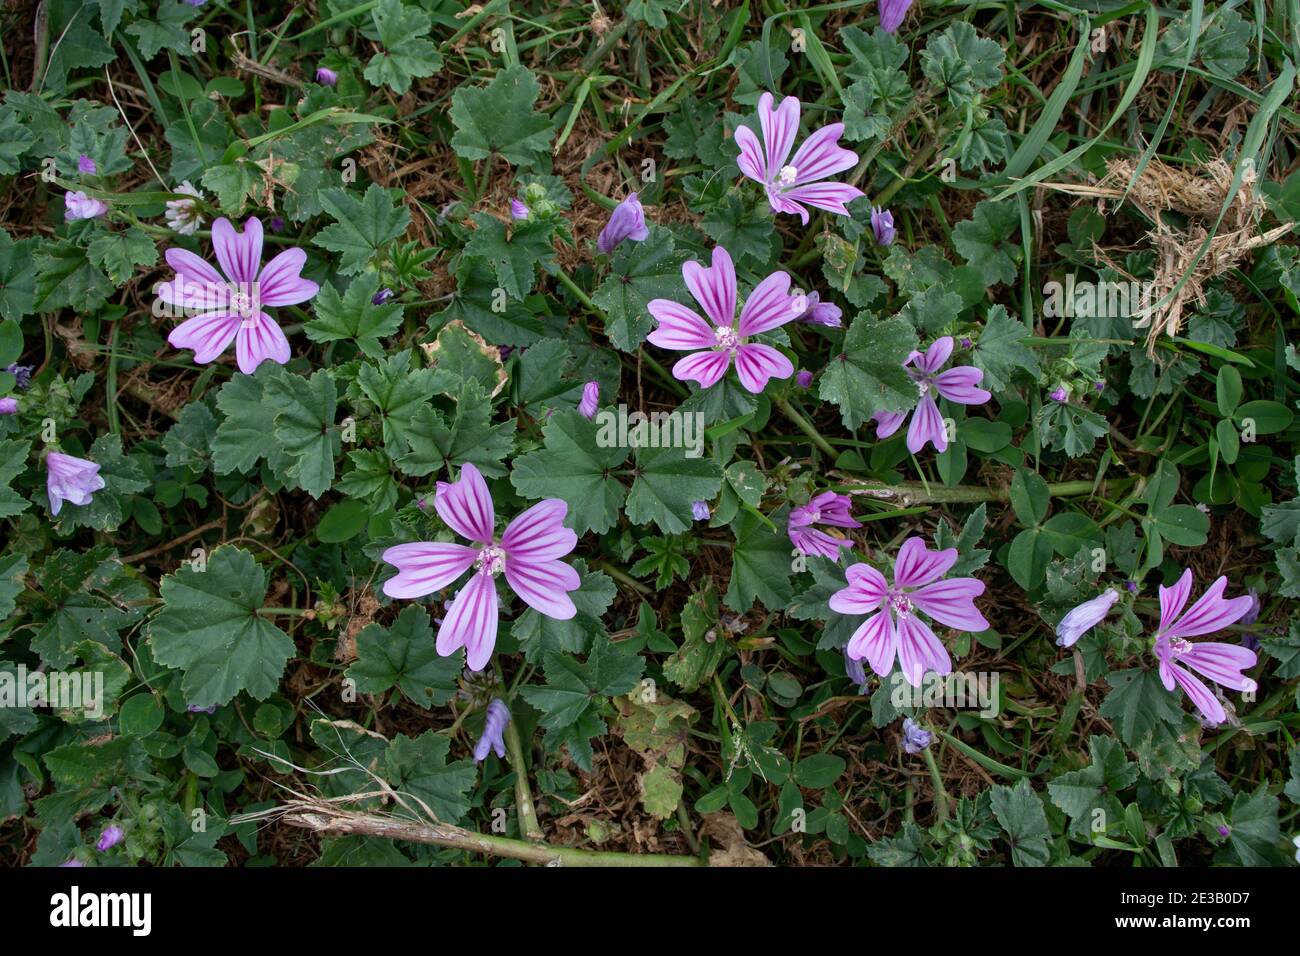 La malow commune ou malva sylvestris violet vif fleurs avec foncé veines Banque D'Images